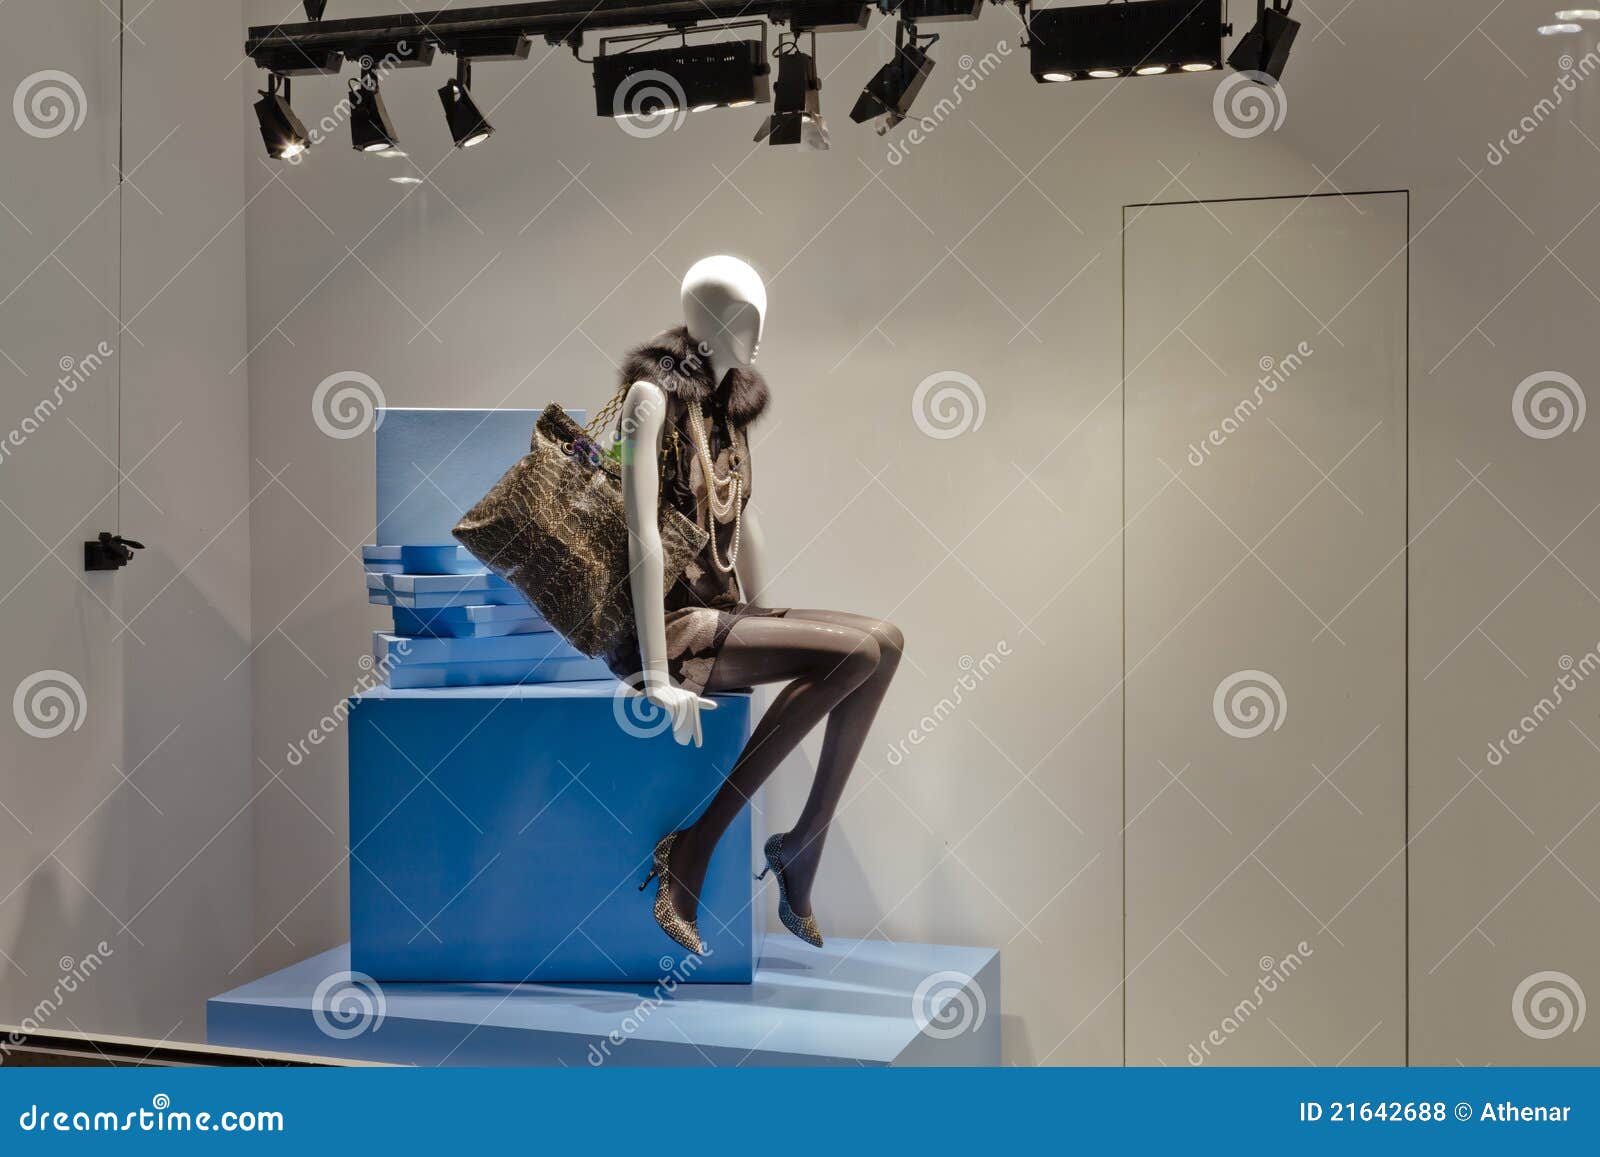 mannequin in fashion showcase